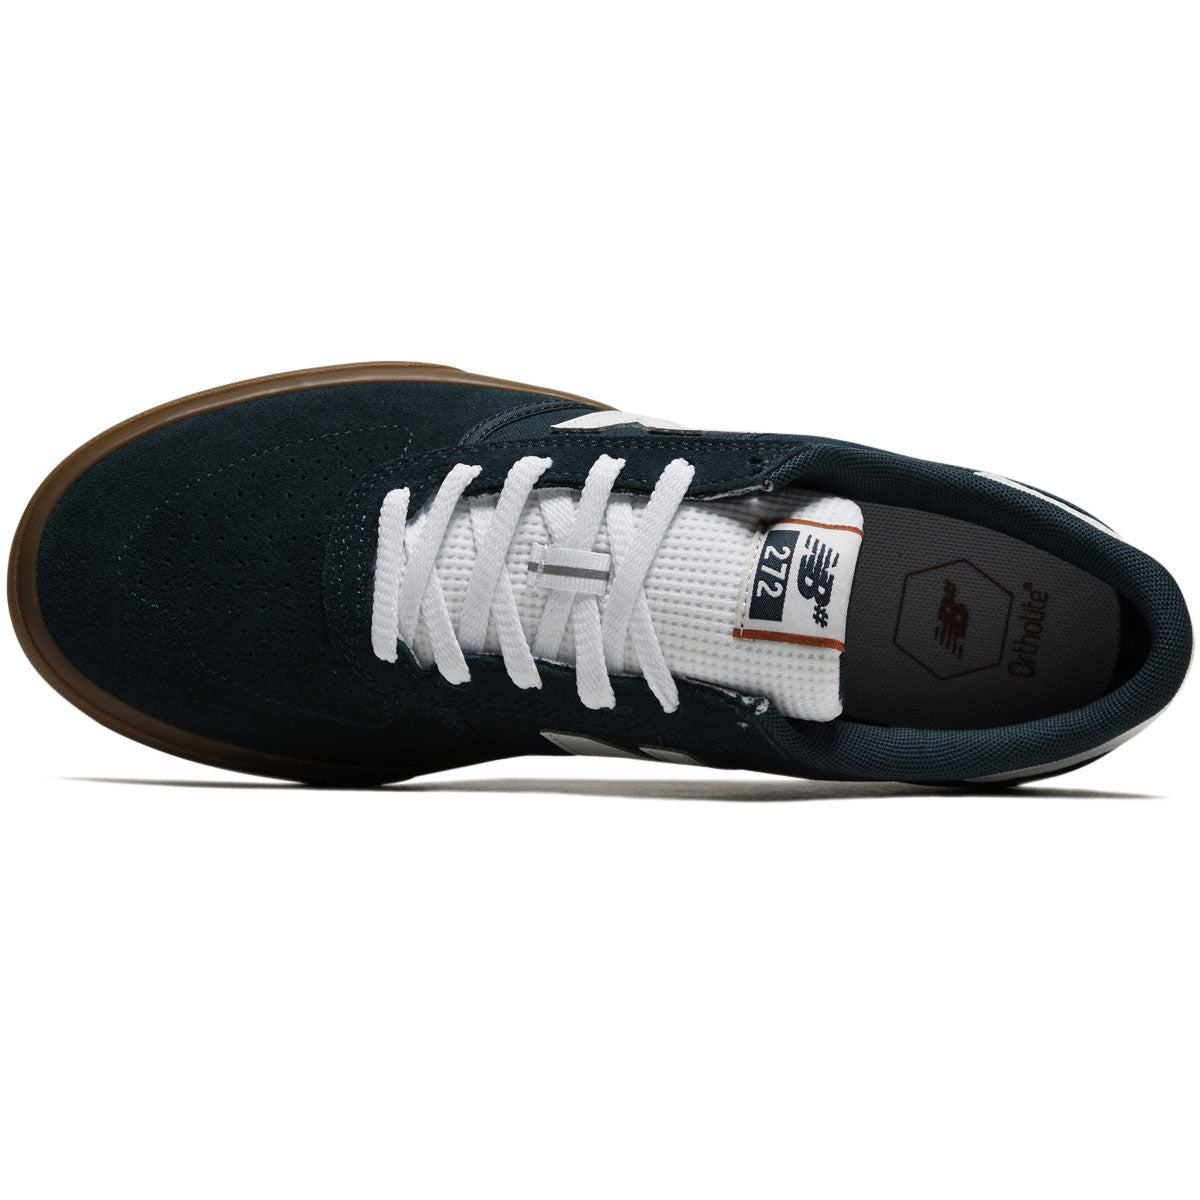 New Balance 272 Shoes - Vintage Teal/Gum image 3